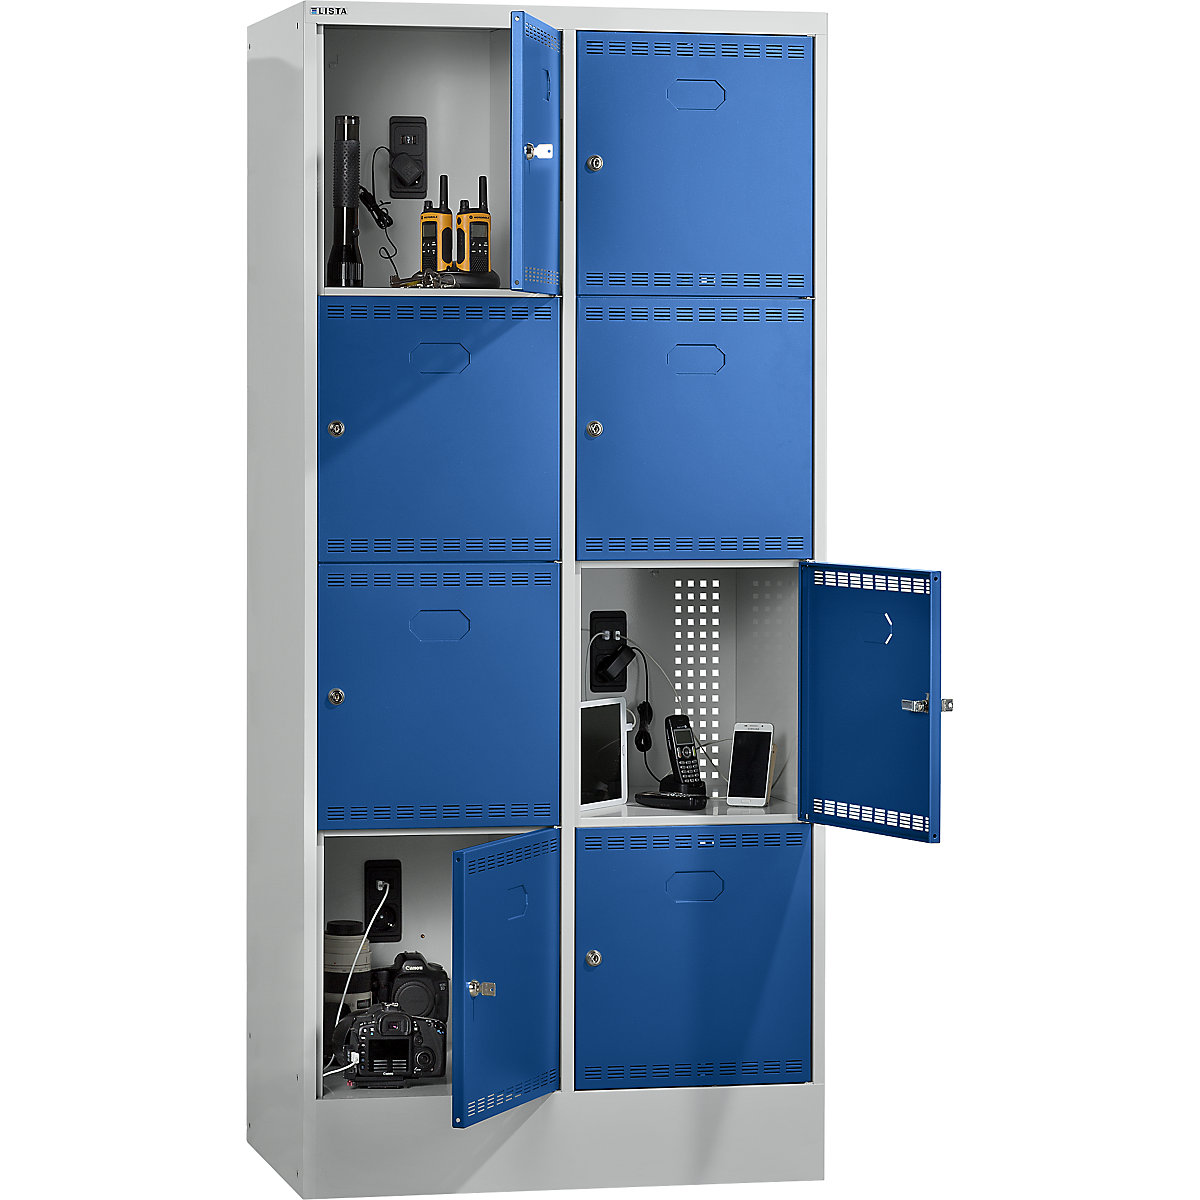 Accuoplaadkast met stroomvoorziening en lockers – LISTA, met 2 x 4 vakken, 1 x 230 V, 1 x USB, grijs/blauw-3